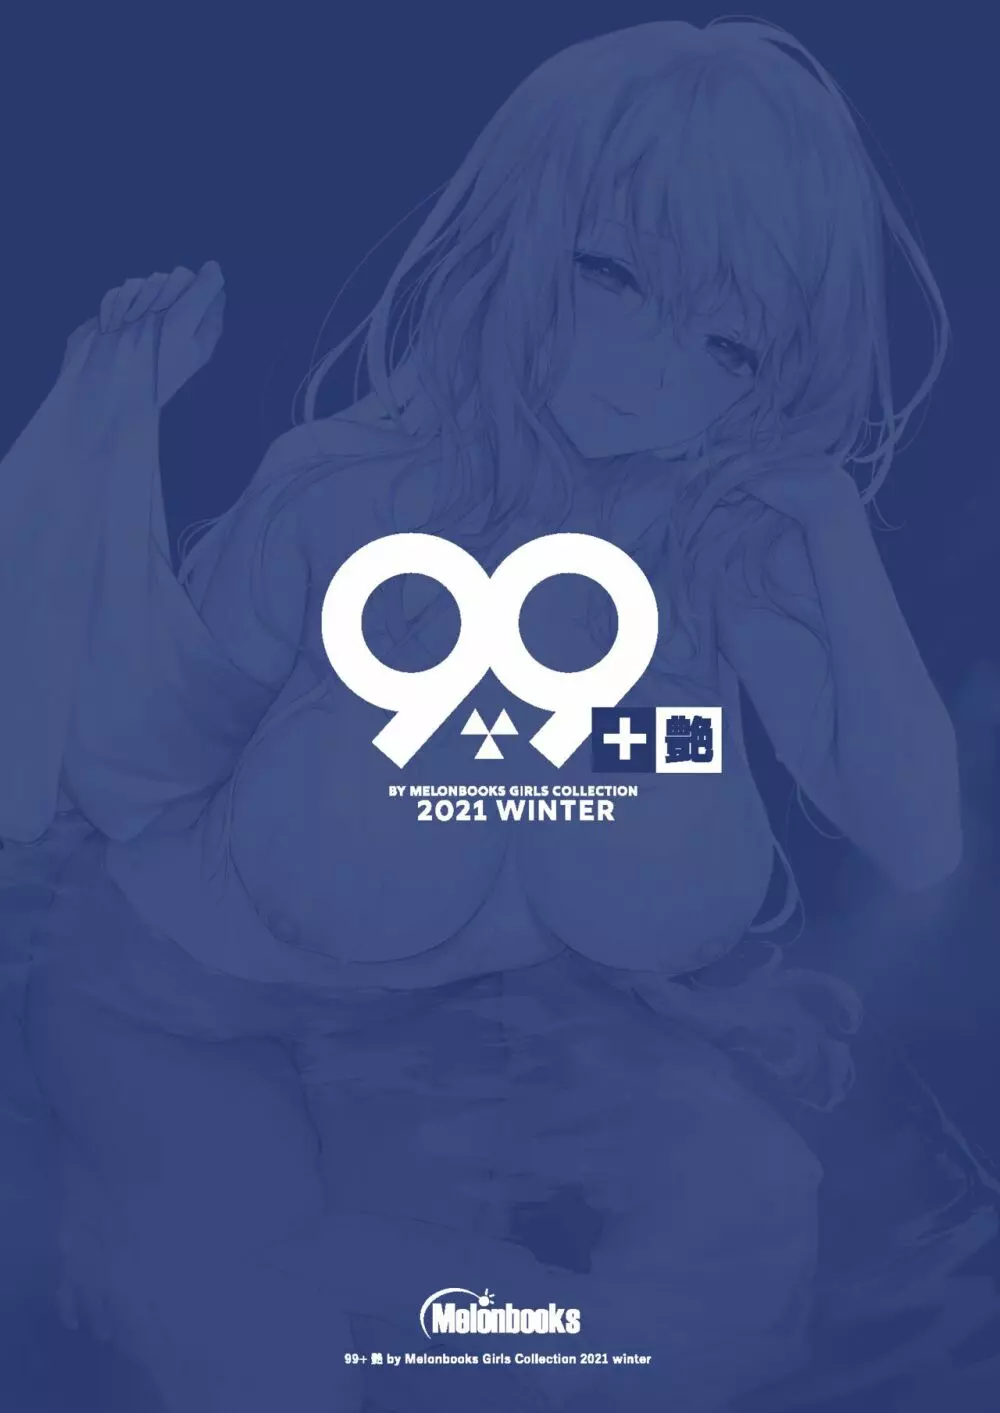 99+ 艶 by Melonbooks Girls Collection 2021 winter 86ページ